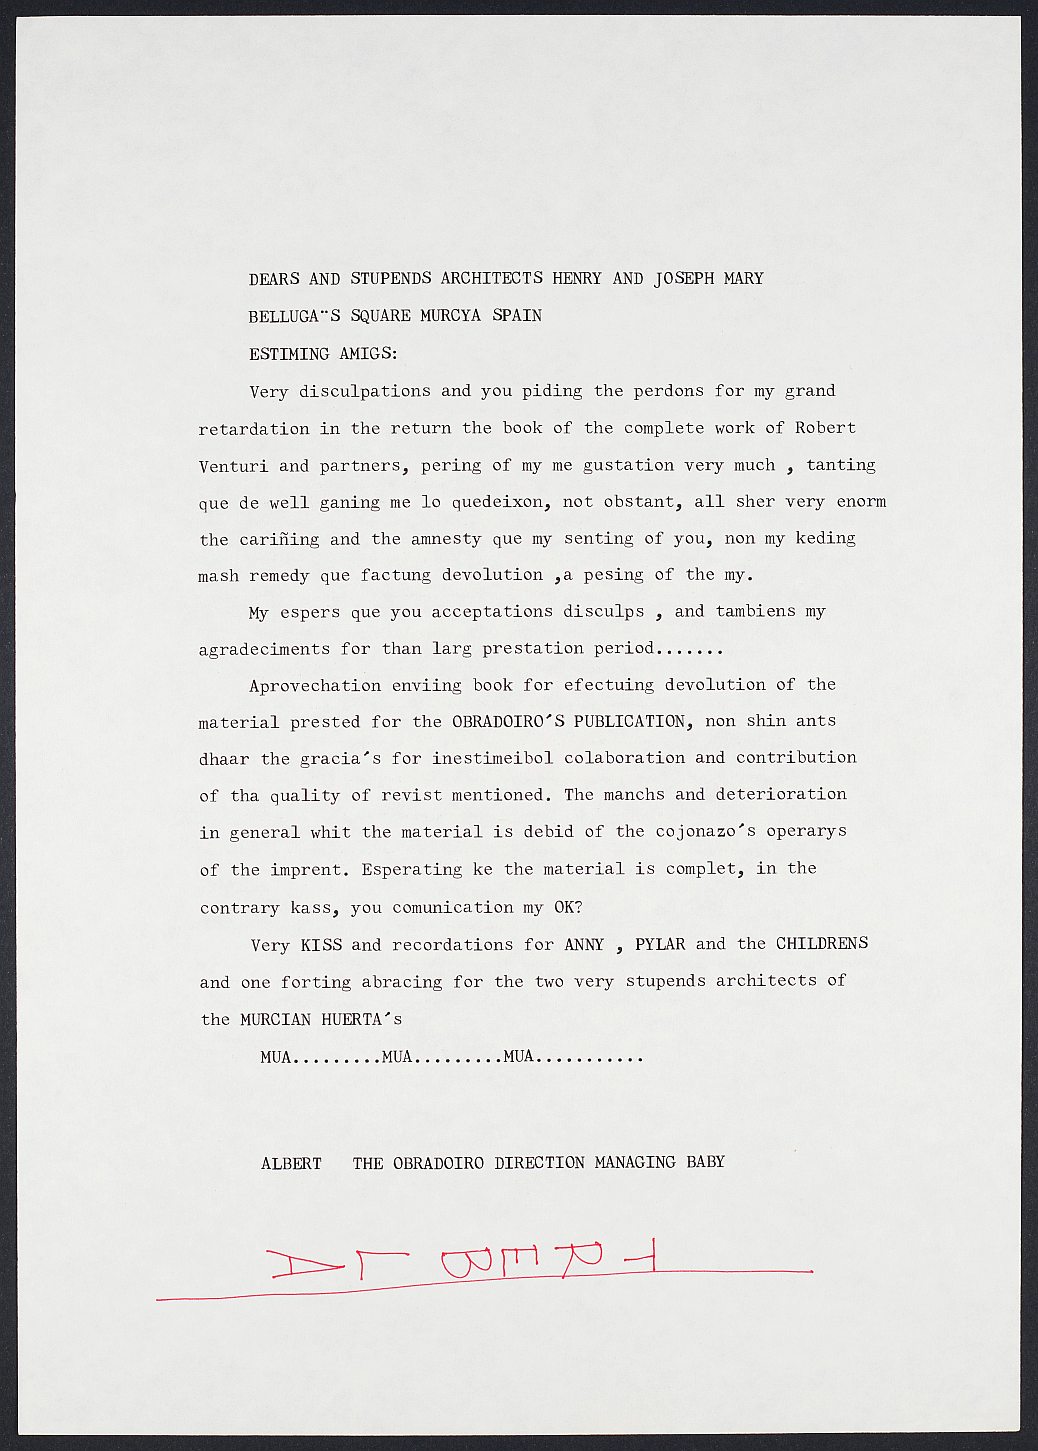 Carta de Albert Noguerol a Enrique Carbonell, anunciando la devolución de un libro y agradeciendo el préstamo.